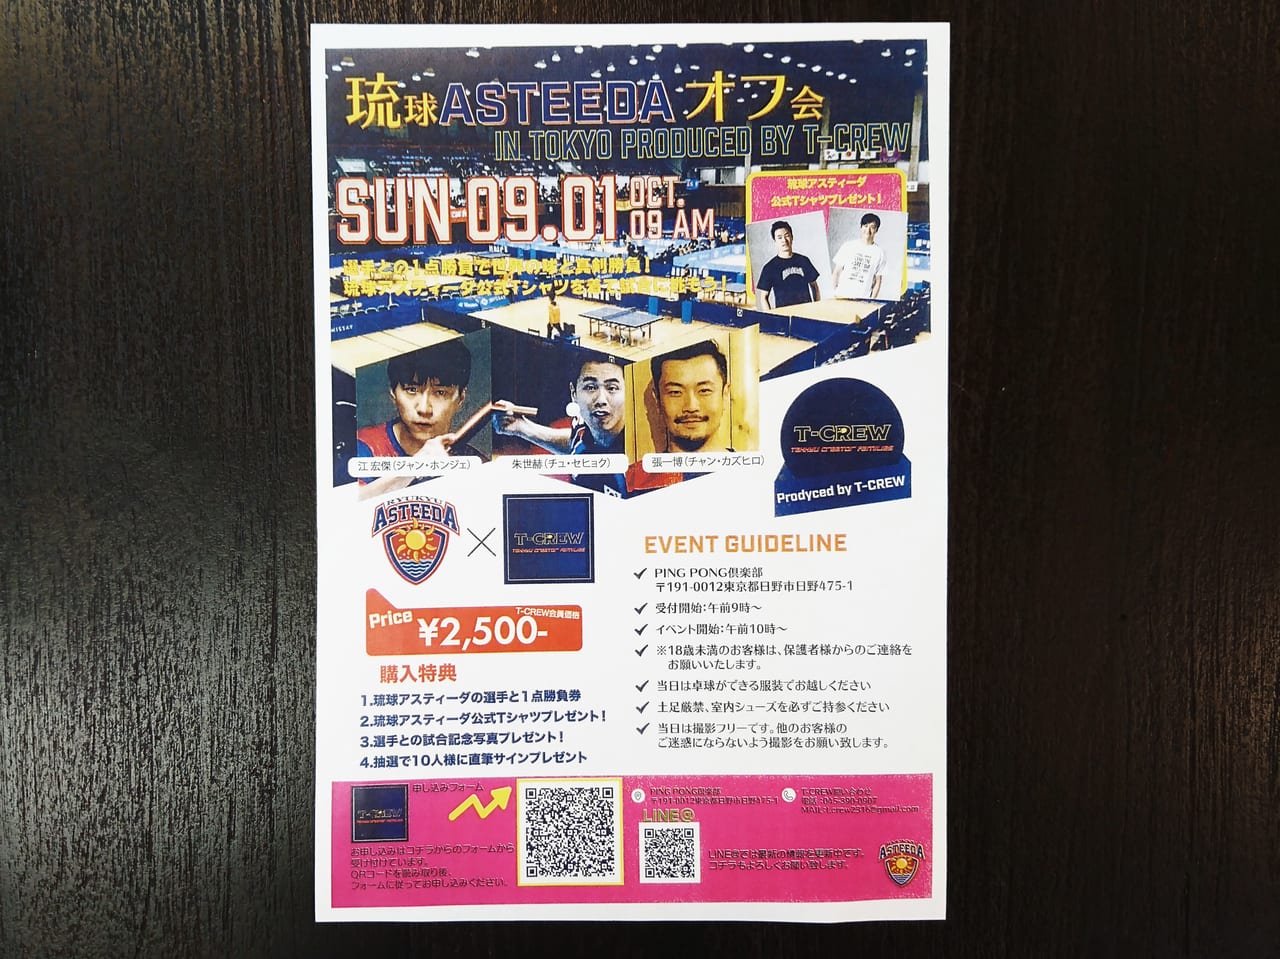 日野ピンポン俱楽部で開催される琉球ASTEEDAオフ会